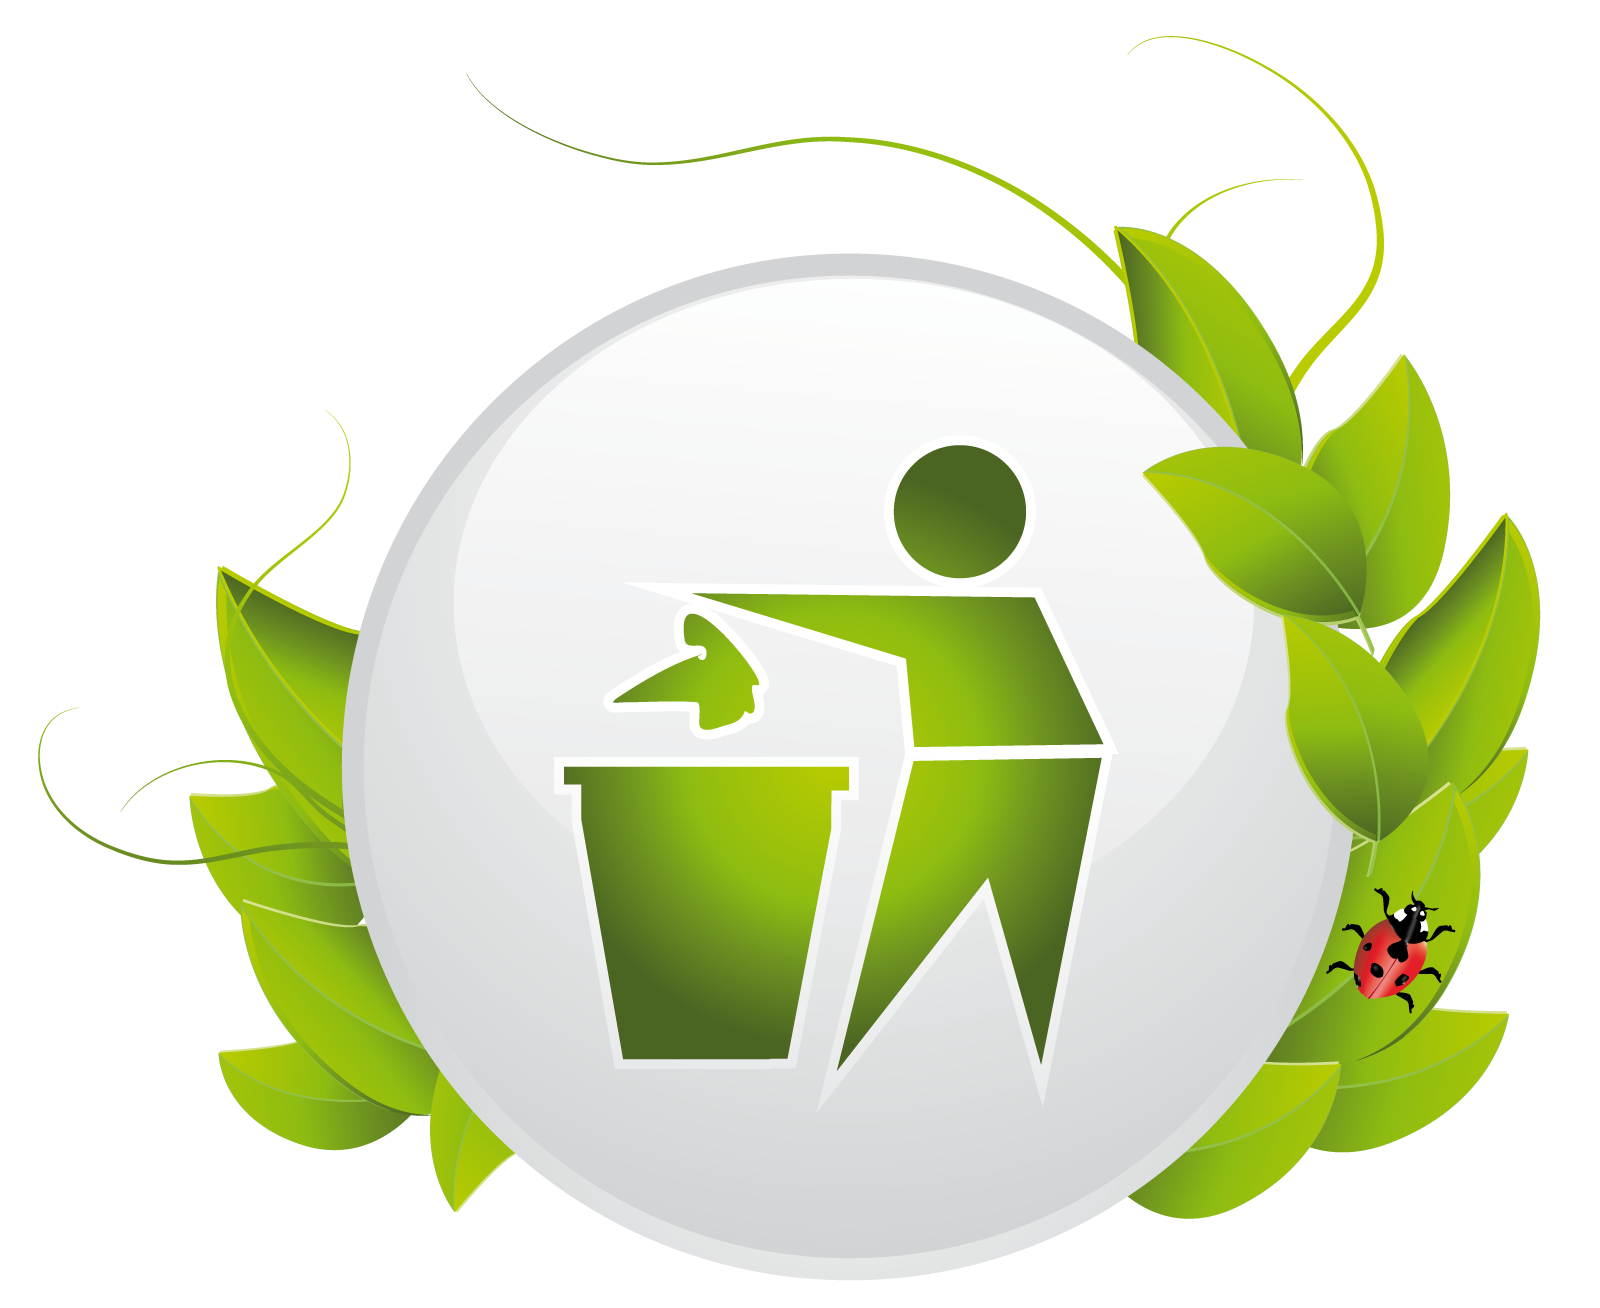 Как сохранить логотип. Эмблема экологии. Экологические значки. Экологический логотип.